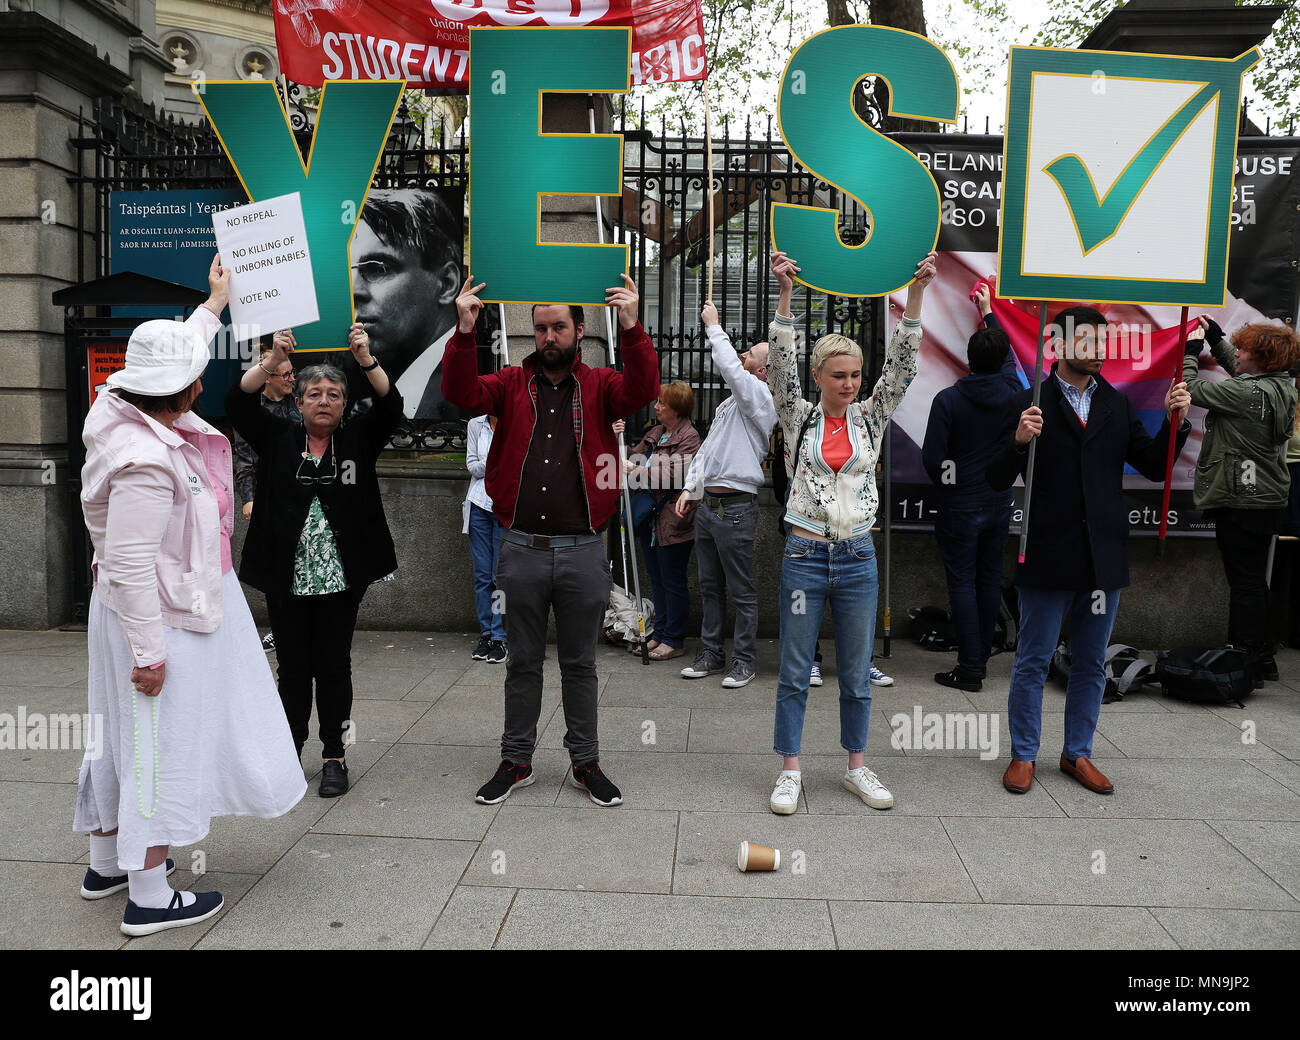 Ein anti-Abtreibung Spoiler ein Zeichen oben hält als pro-choice-Aktivisten Anti-abtreibungs-Banner, die Grafiken außerhalb Leinster House, Dublin enthalten, vor dem Referendum am 8. Änderung der irischen Verfassung am 25. Mai. Stockfoto